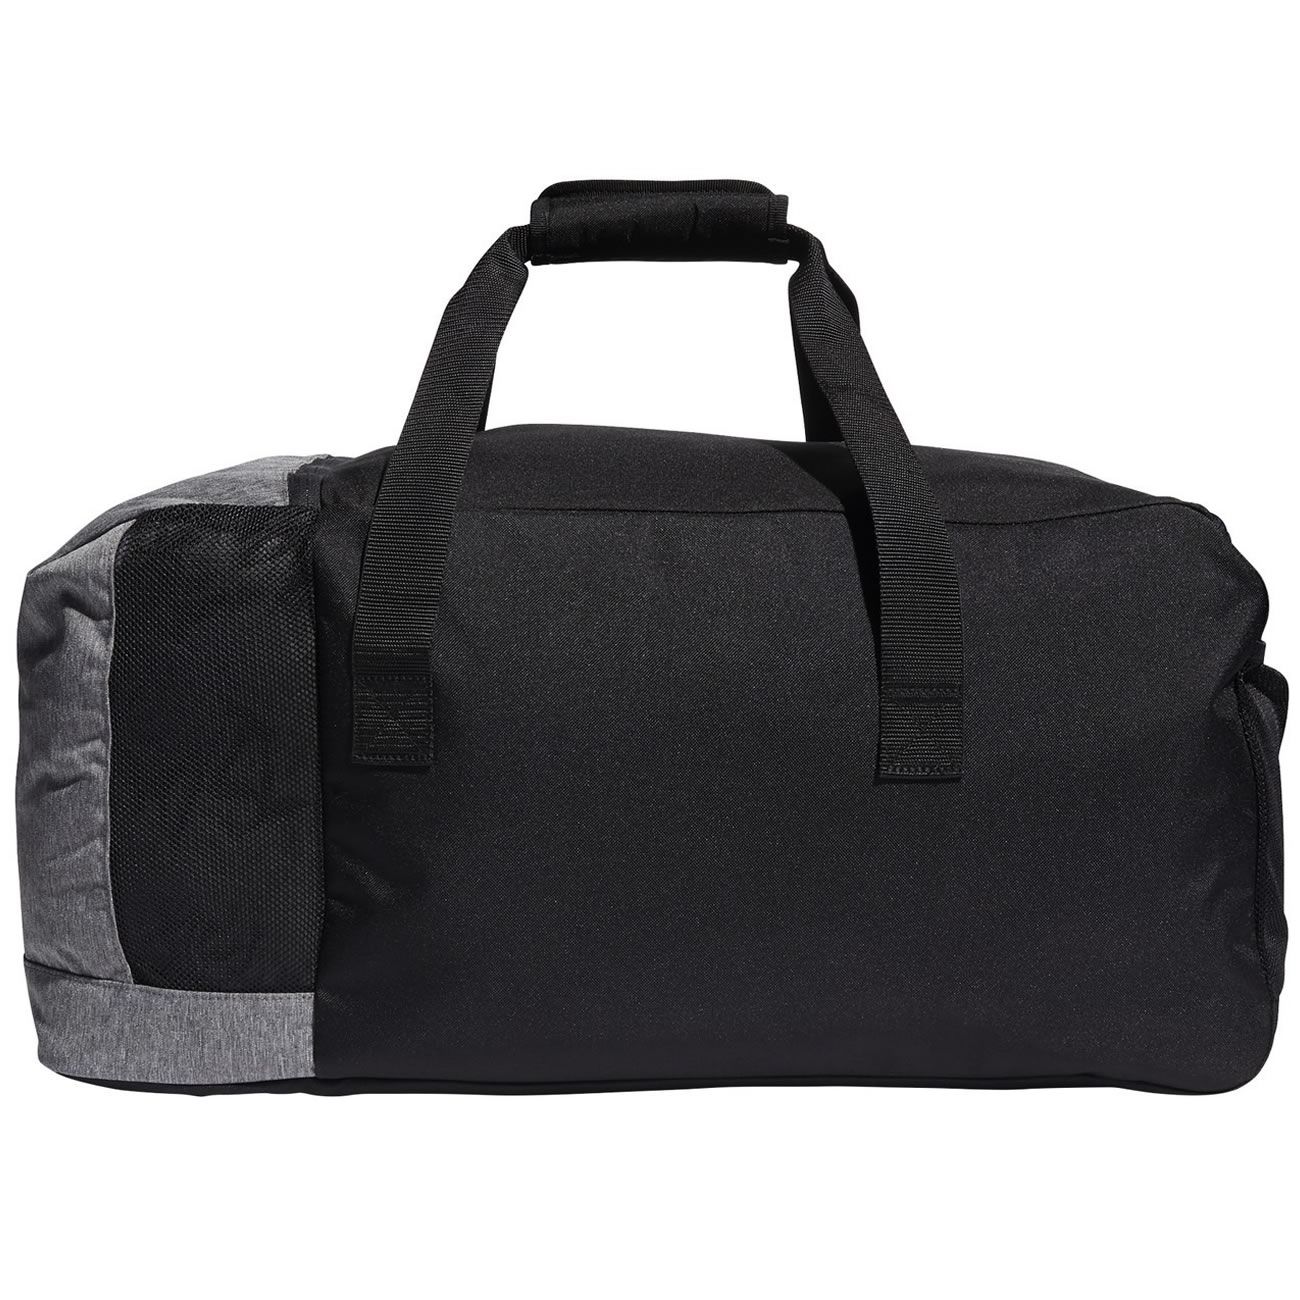 adidas Duffle Bag Black/Grey | Scottsdale Golf